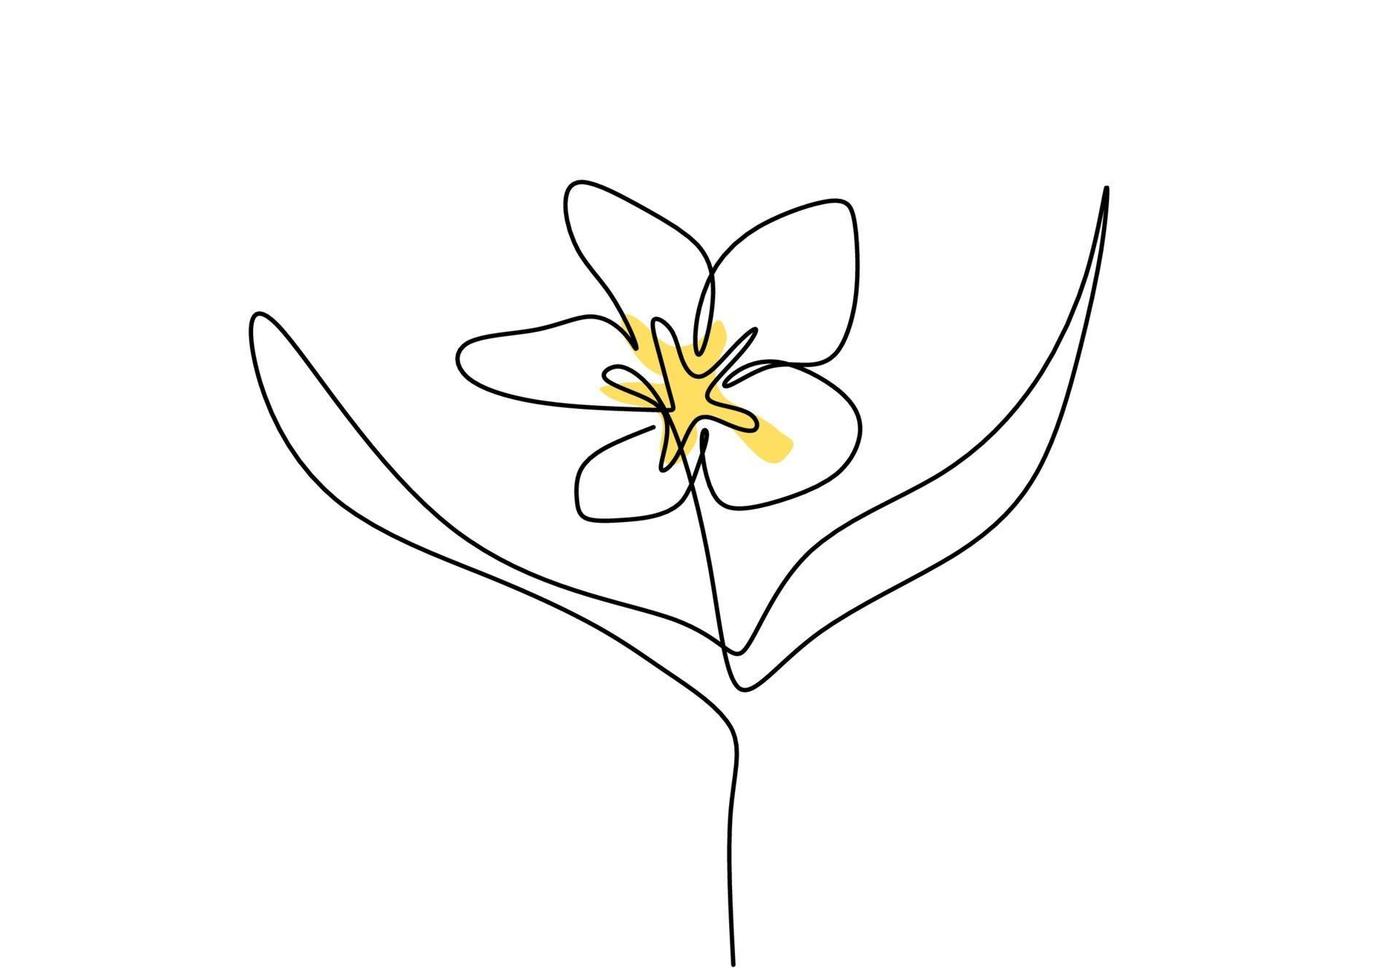 hermosa flor estilo de dibujo continuo de una línea. Diseño minimalista de flores de jazmín balinés. Flor de jazmín de belleza fresca para logotipo de jardín aislado sobre fondo blanco. ilustración vectorial vector